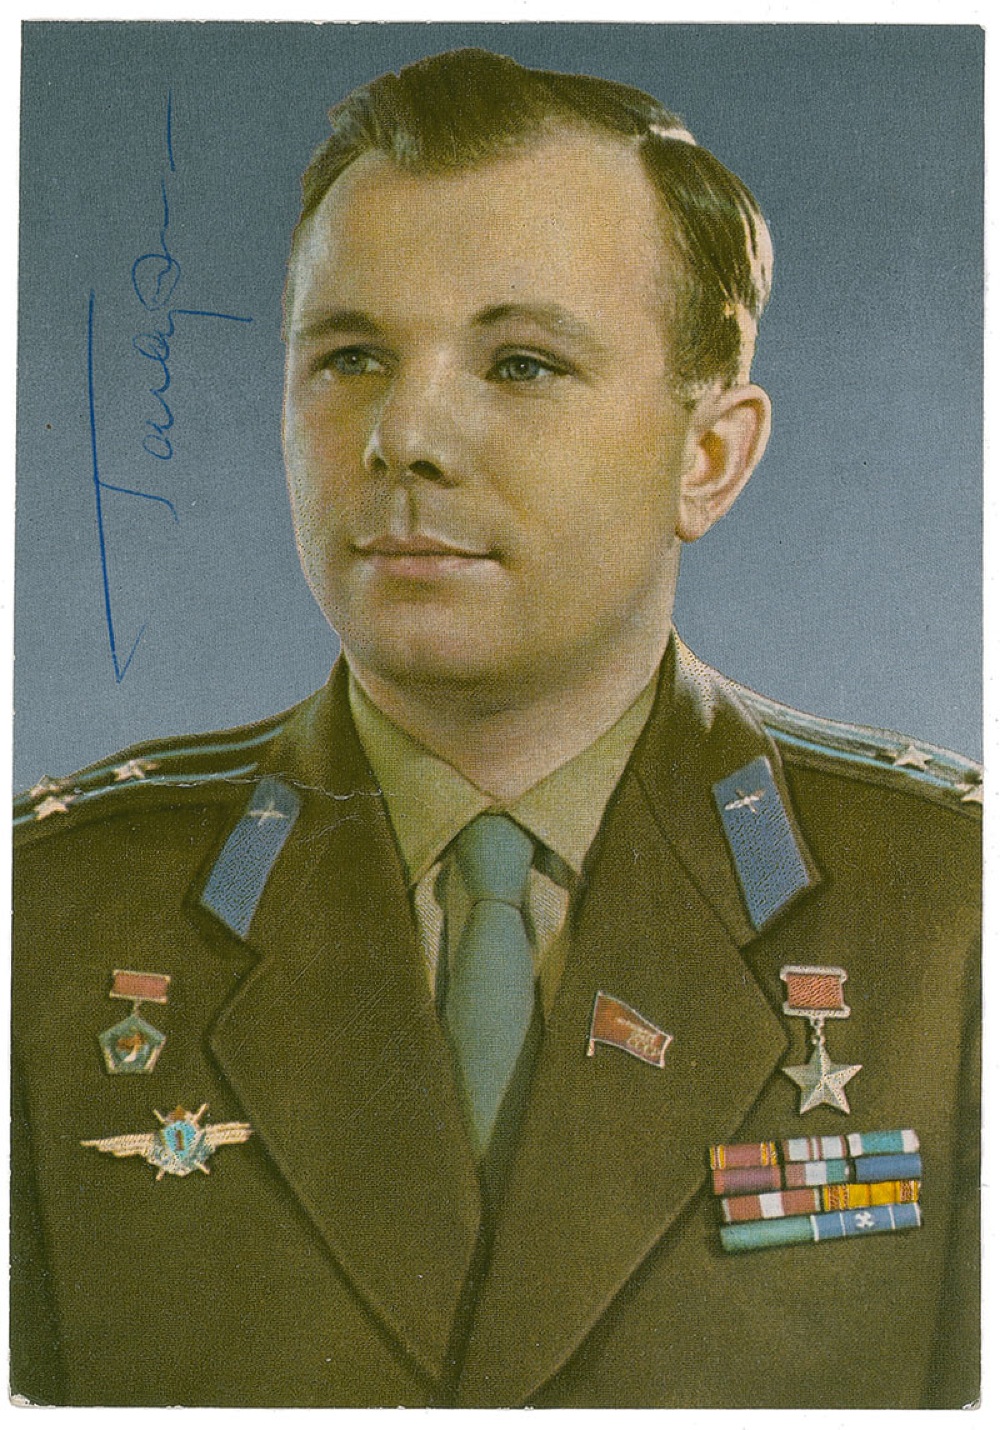 Lot #541 Yuri Gagarin